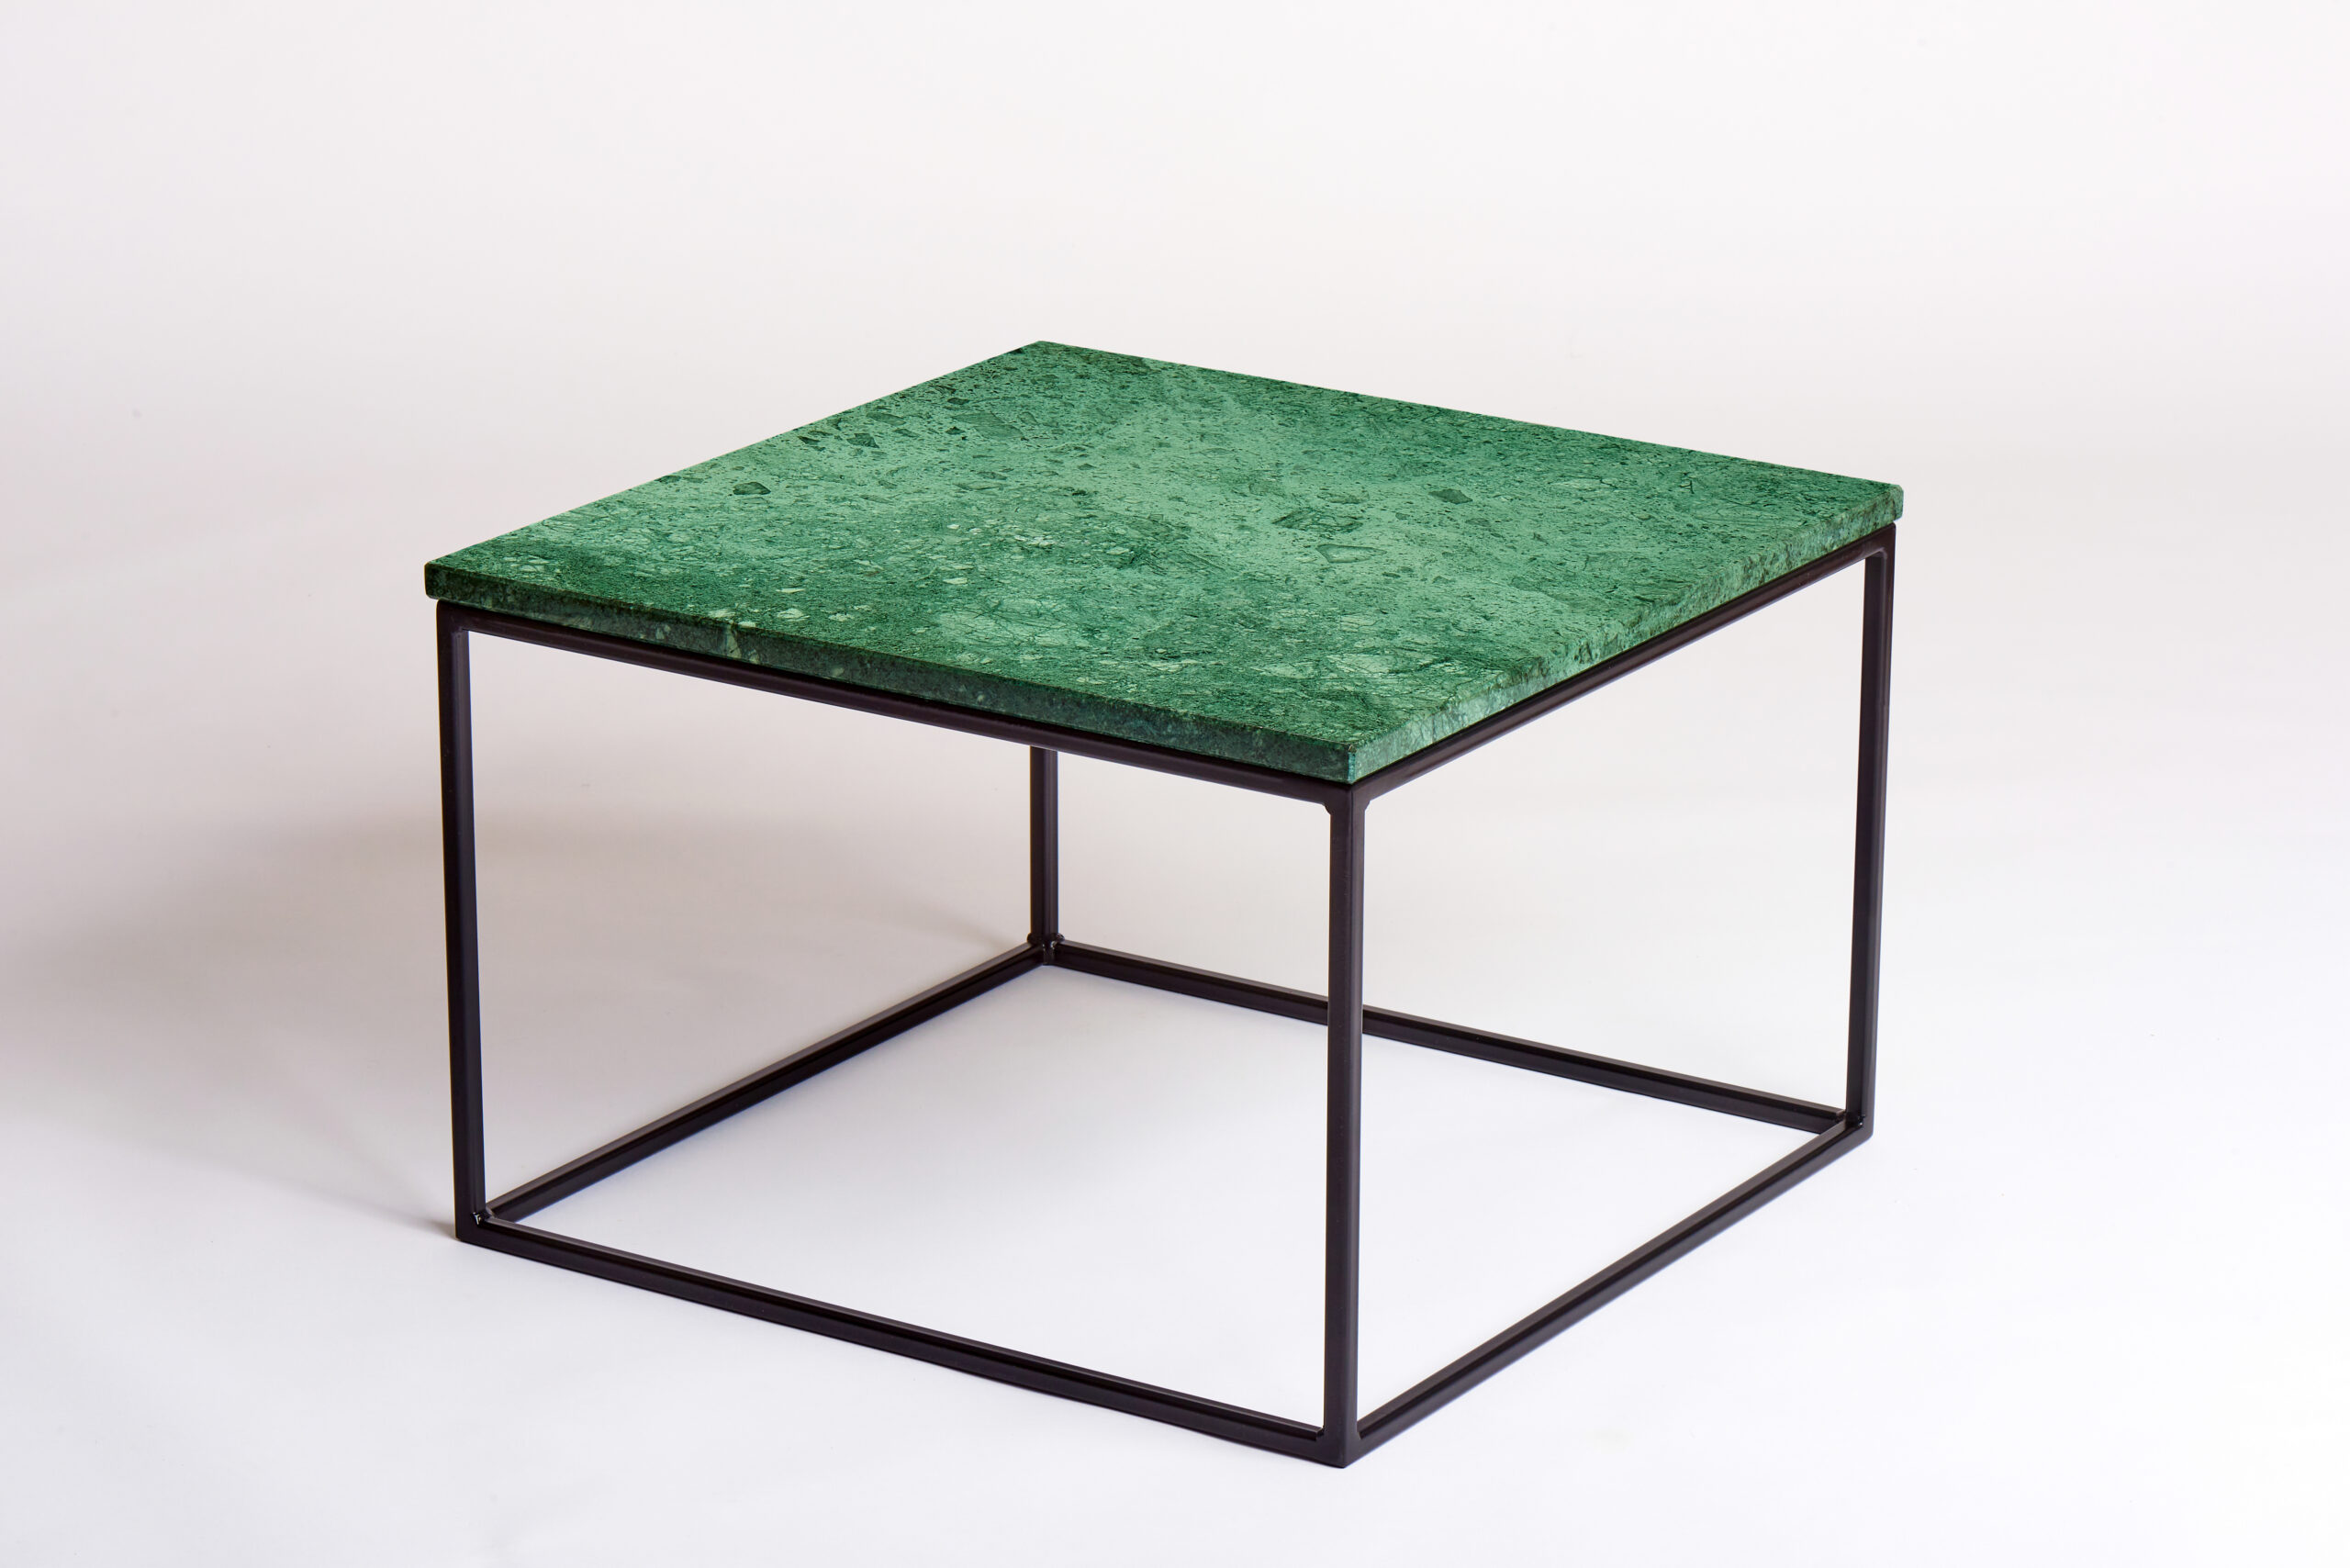 60 bij 60 cm - Groene marmeren salontafel- boven zijaanzicht- VanMarmer